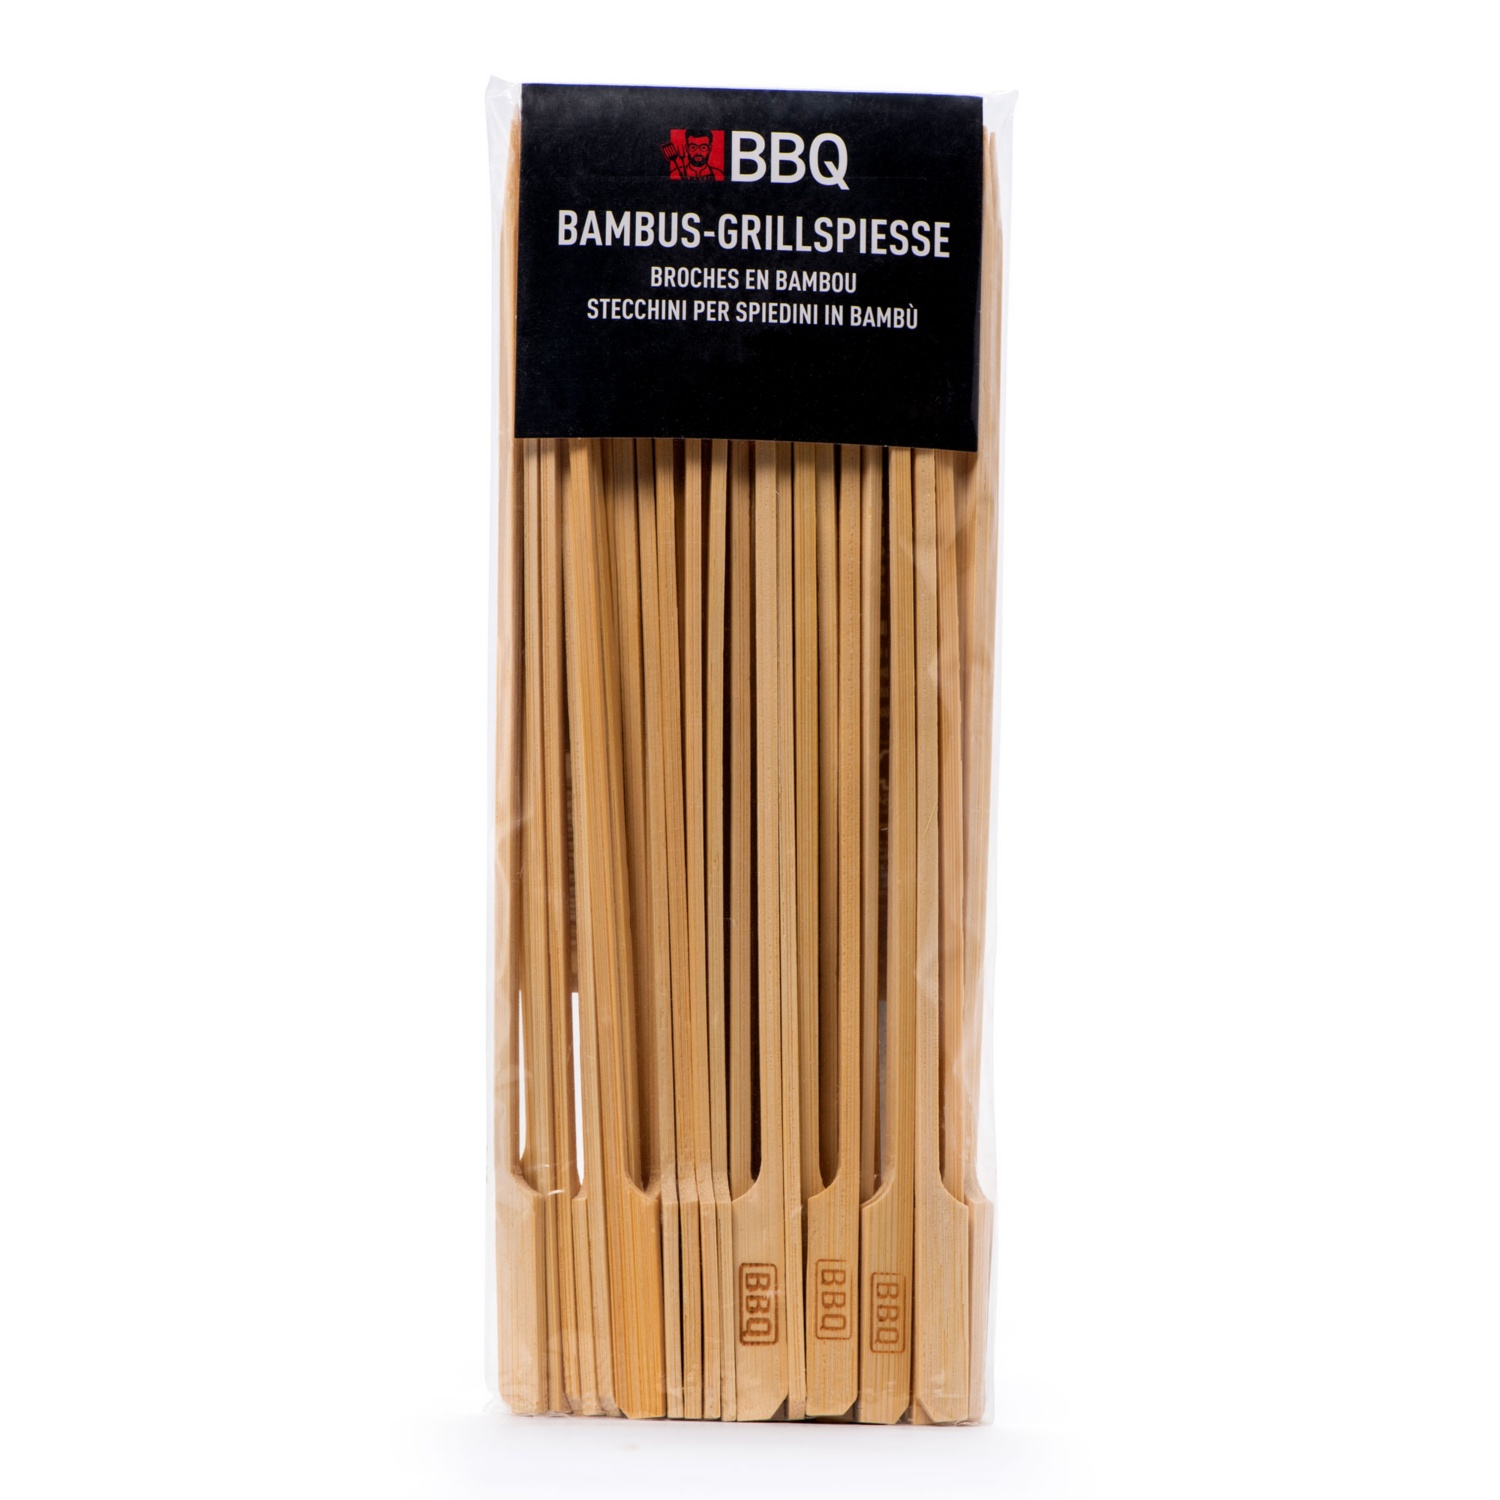 BBQ Bambus-Grillspieße